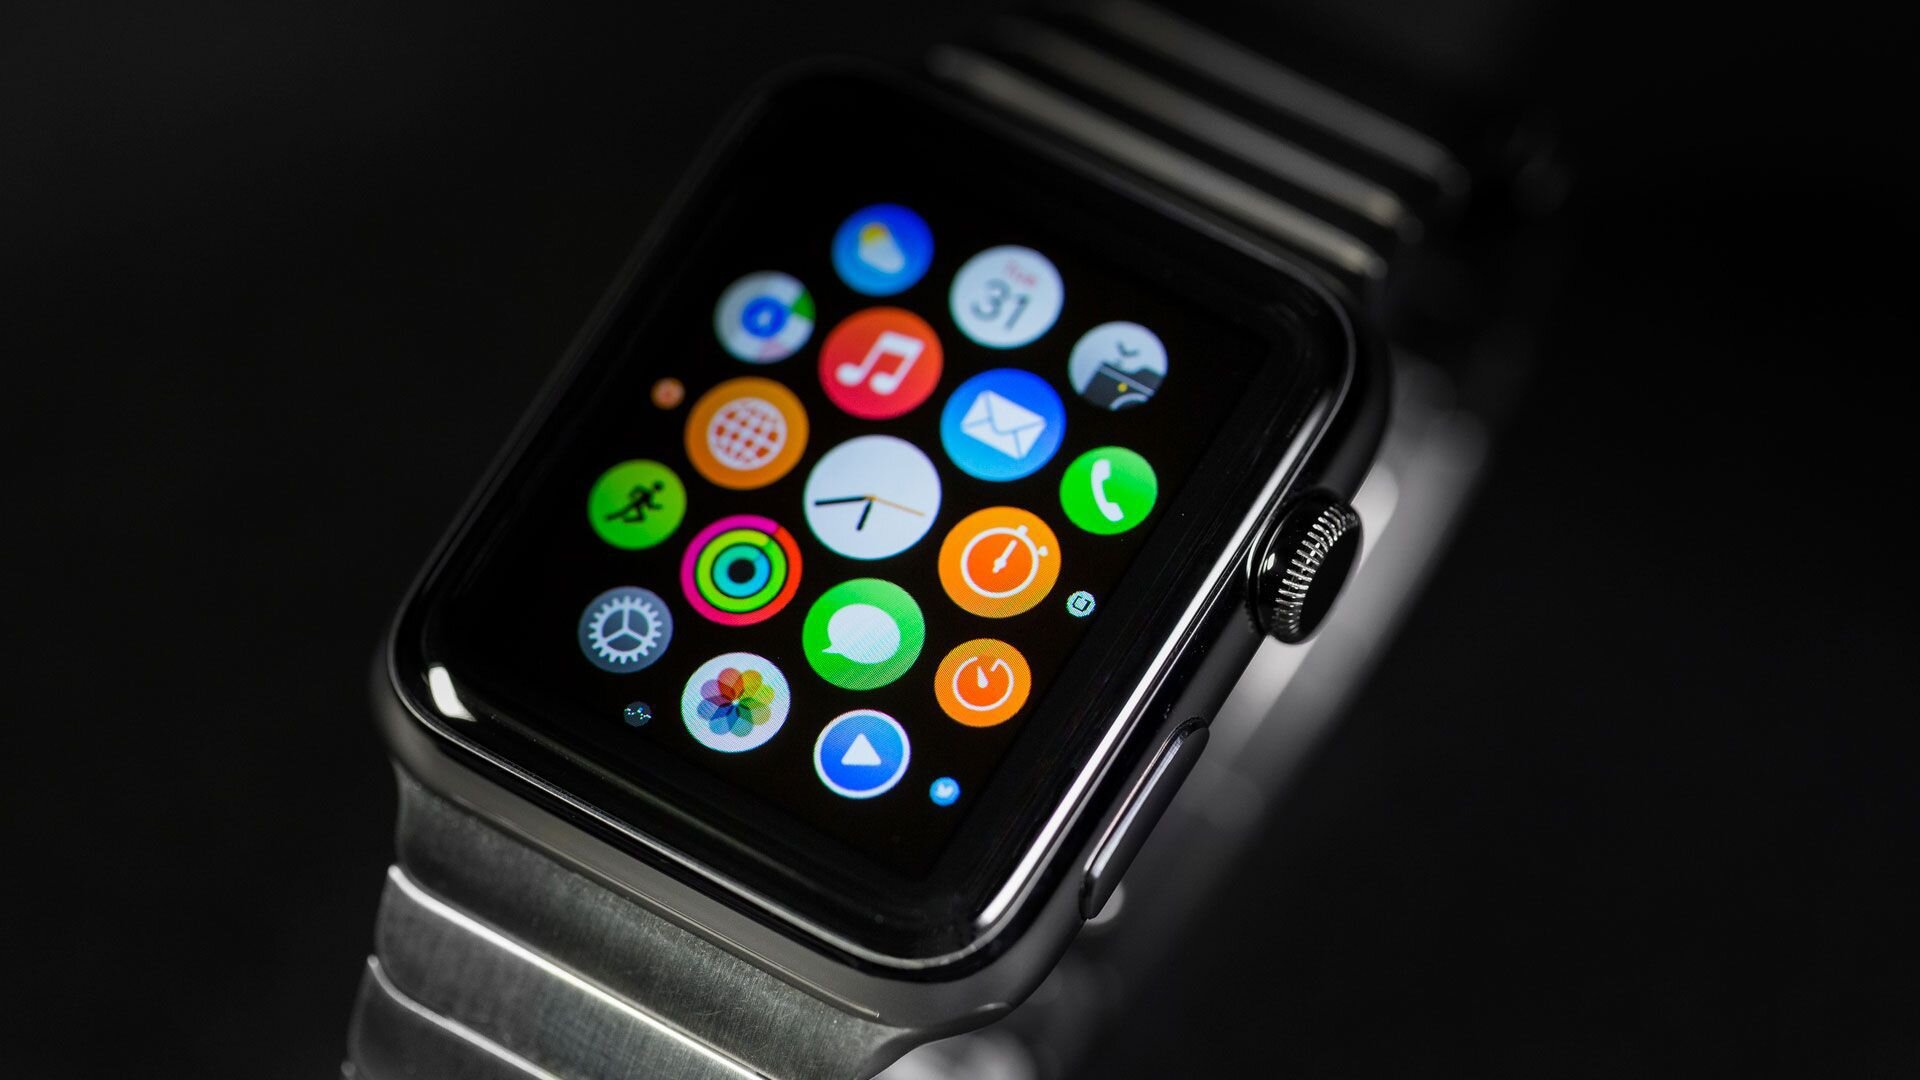 Smartwatch là một sản phẩm công nghệ đang được ưa chuộng hiện nay. Với khả năng kết nối internet và tính năng đa dạng như đọc tin nhắn, theo dõi sức khỏe, điều khiển nhạc,... Smartwatch sẽ giúp bạn thêm tiện lợi trong mọi hoạt động trong ngày. Hãy xem ảnh liên quan để khám phá thế giới của Smartwatch.